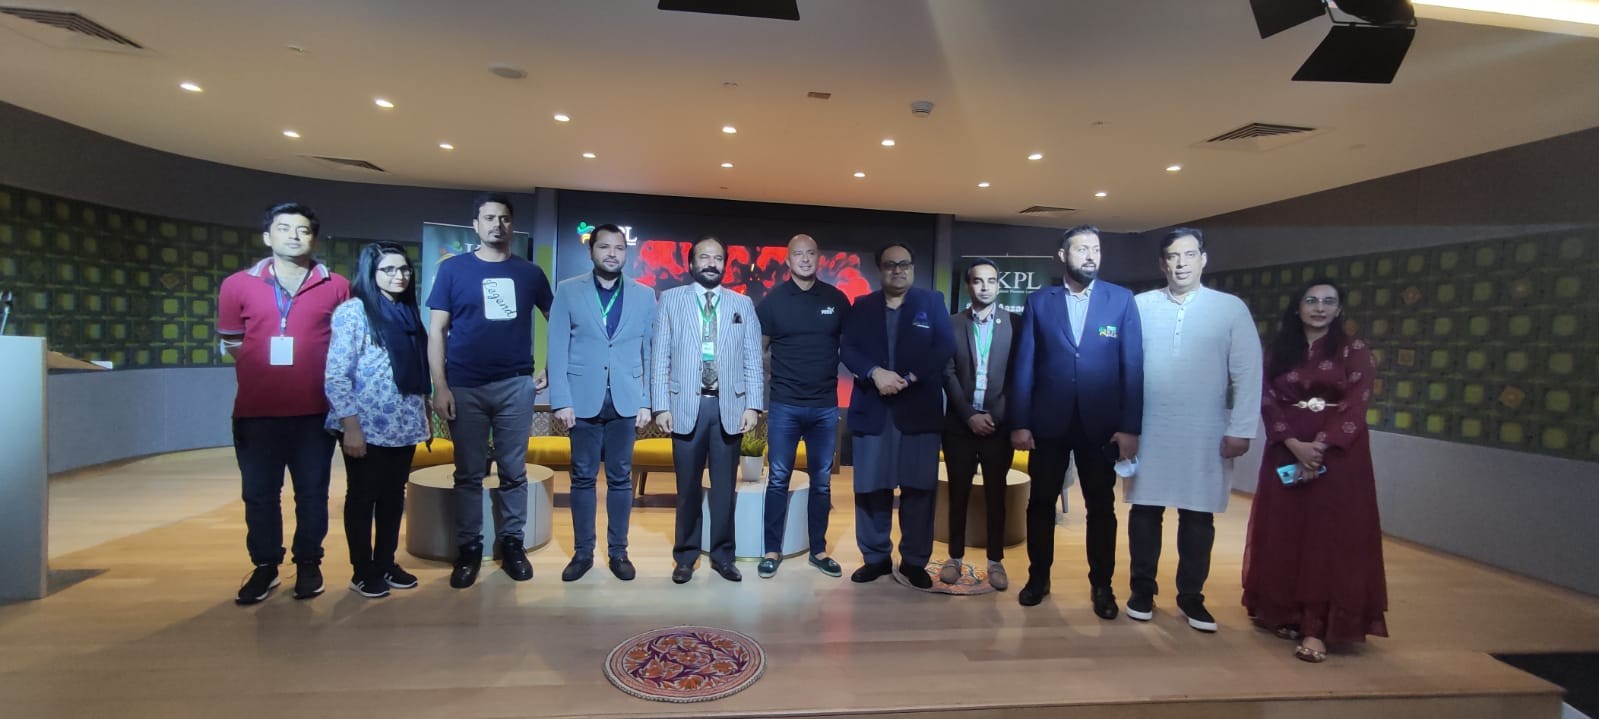 Herschelle Gibbs joins Kashmir Premier League Showcase event at Expo 2020 Dubai